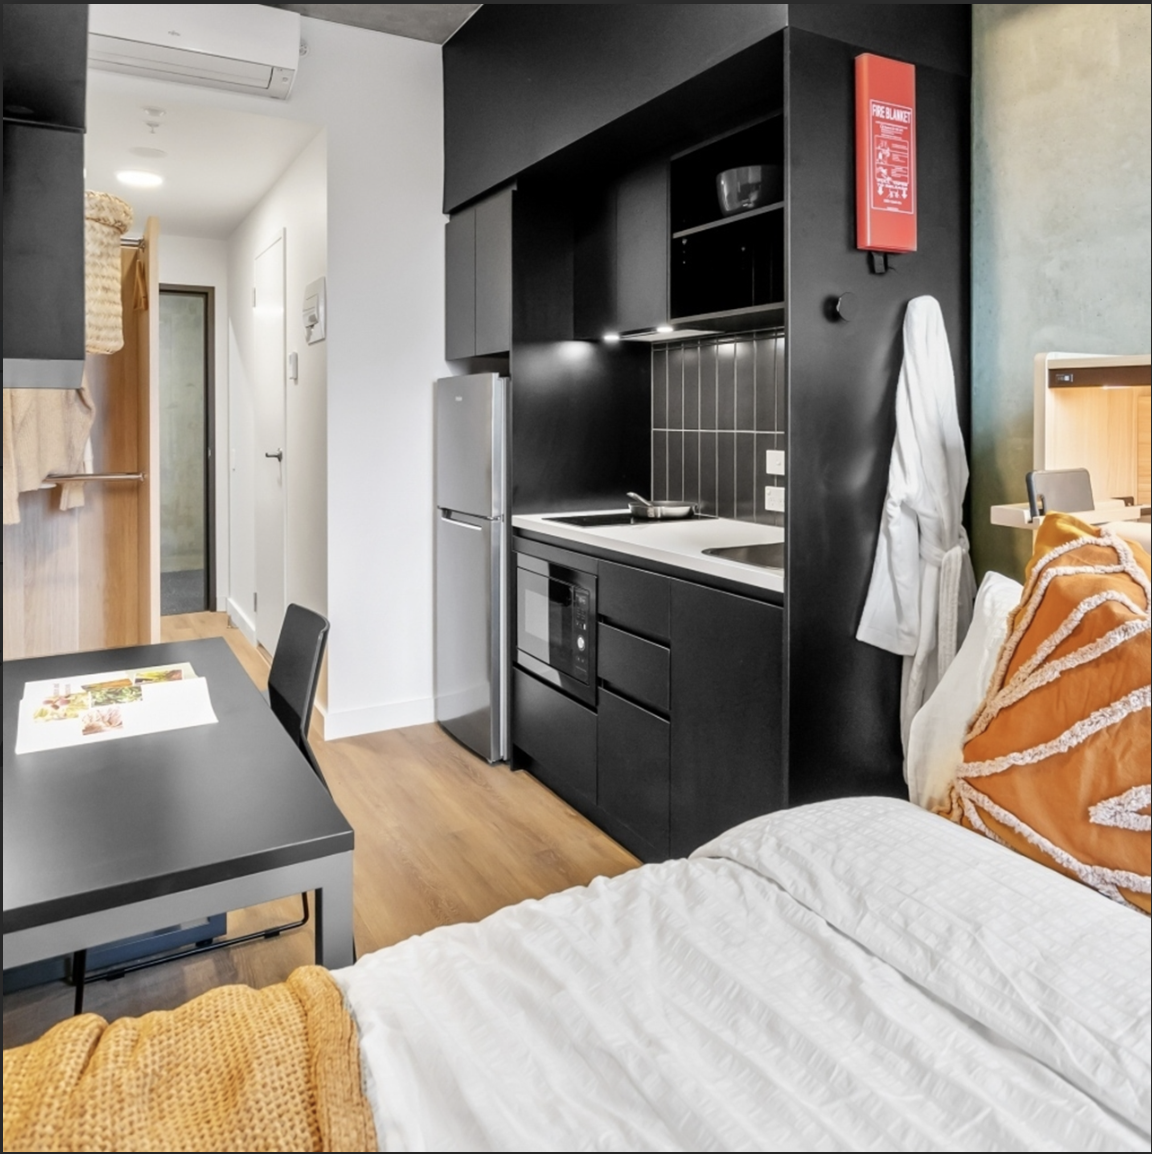 澳洲租房| The Switch以家和生活的概念為出發點，提供許多便利租客的服務與設施，例如科技化的裝備相當符合現代年輕人的需求 。